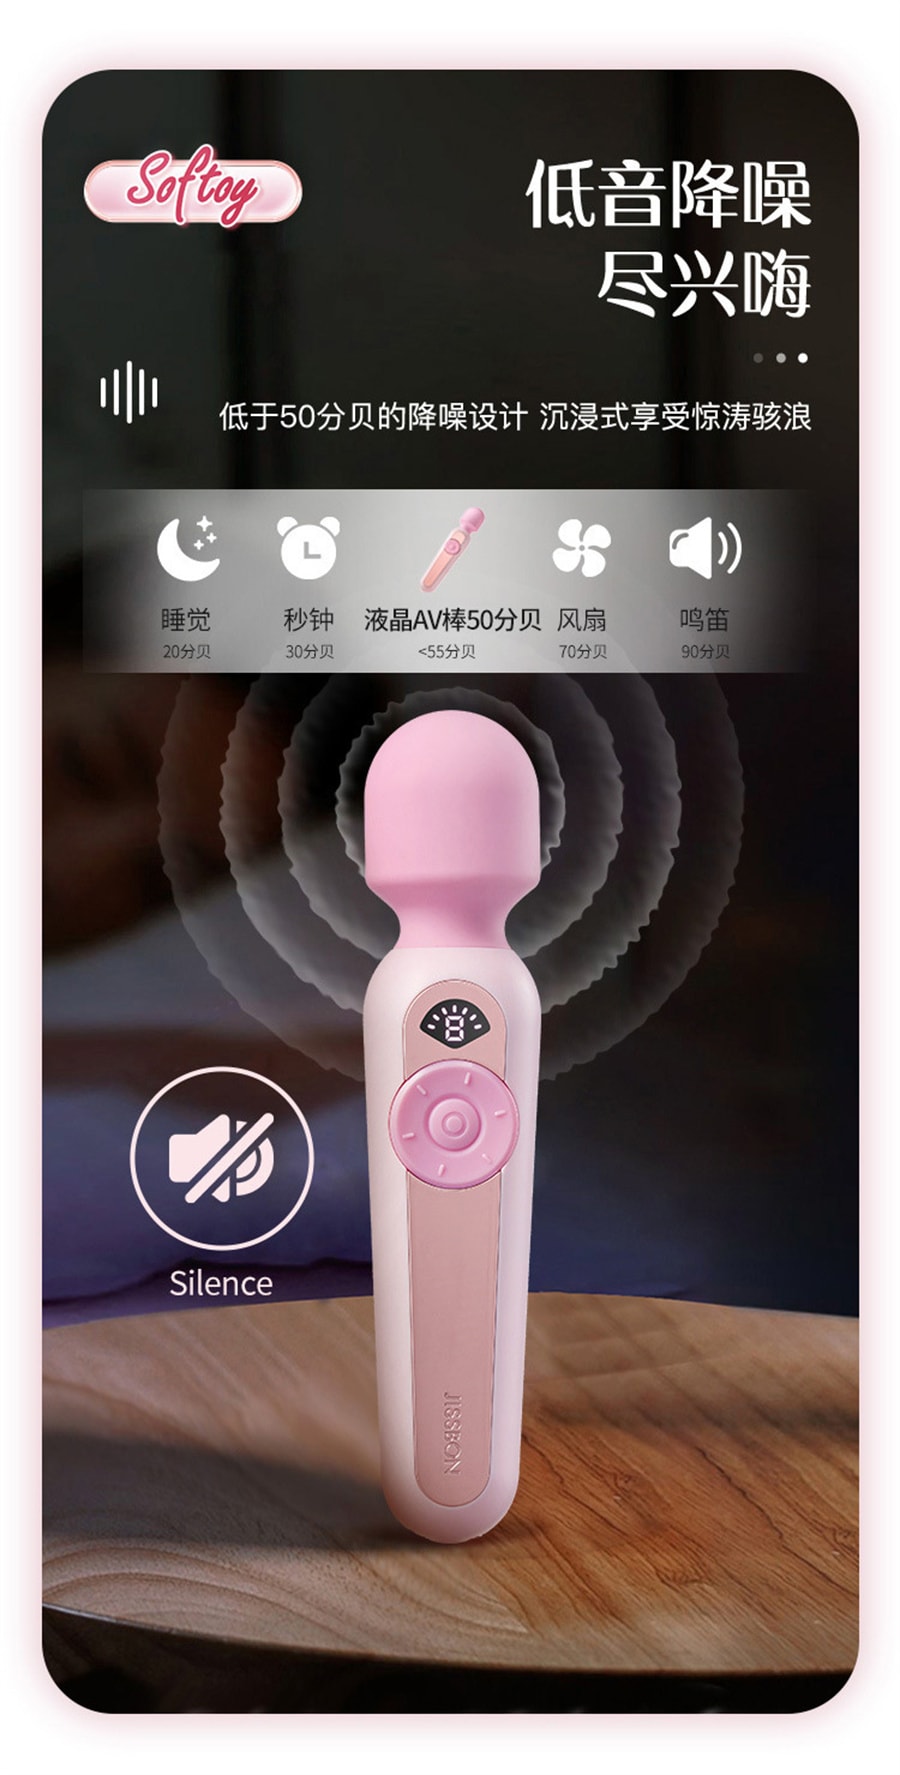 【中国直邮】杰士邦 Softoy系列液晶AV震动棒舔吸舌舔情趣玩具女用成人情趣用品